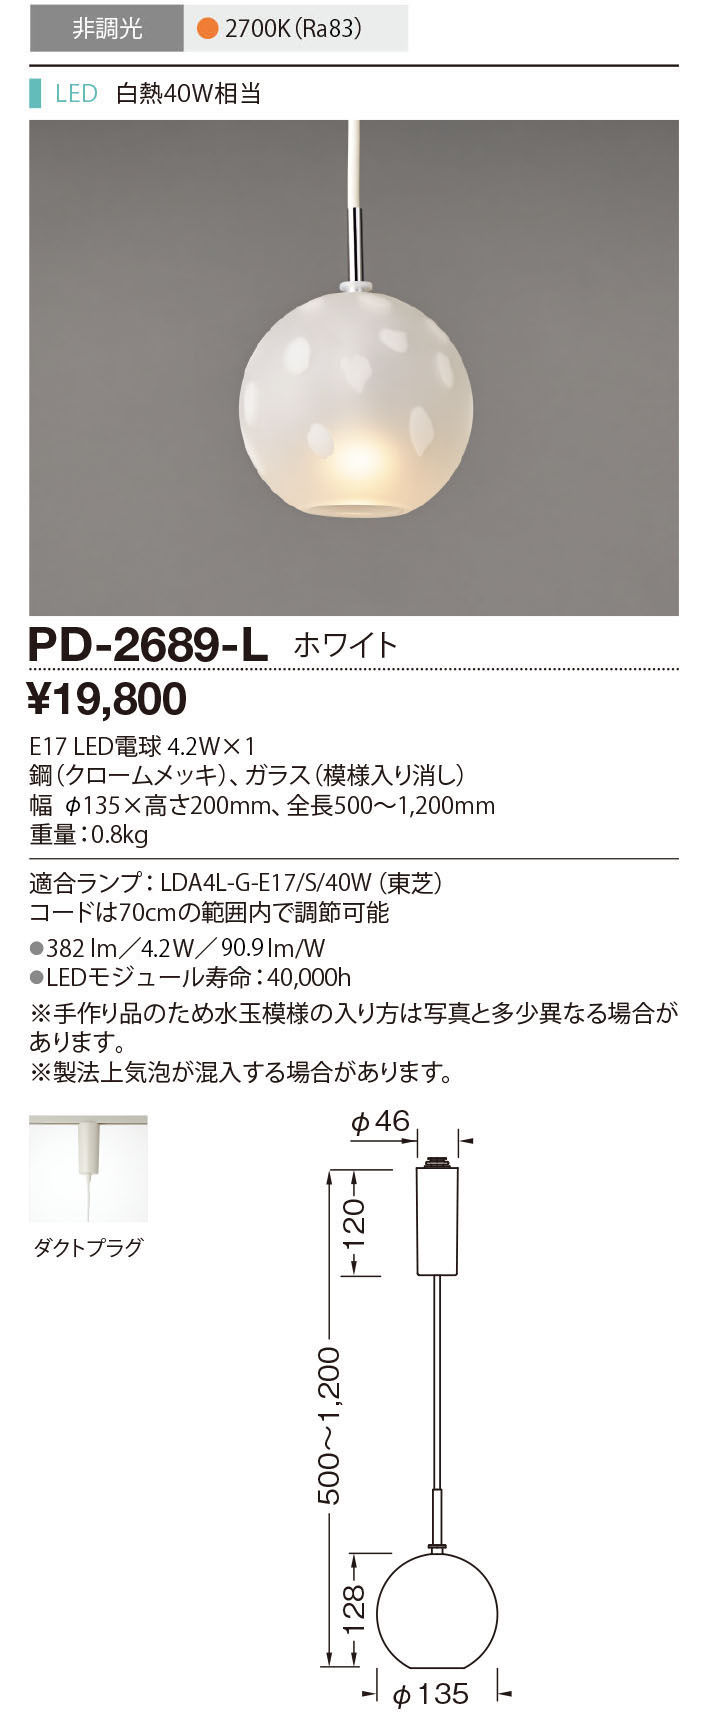 PD-2689-L(山田照明) 商品詳細 ～ 照明器具・換気扇他、電設資材販売の